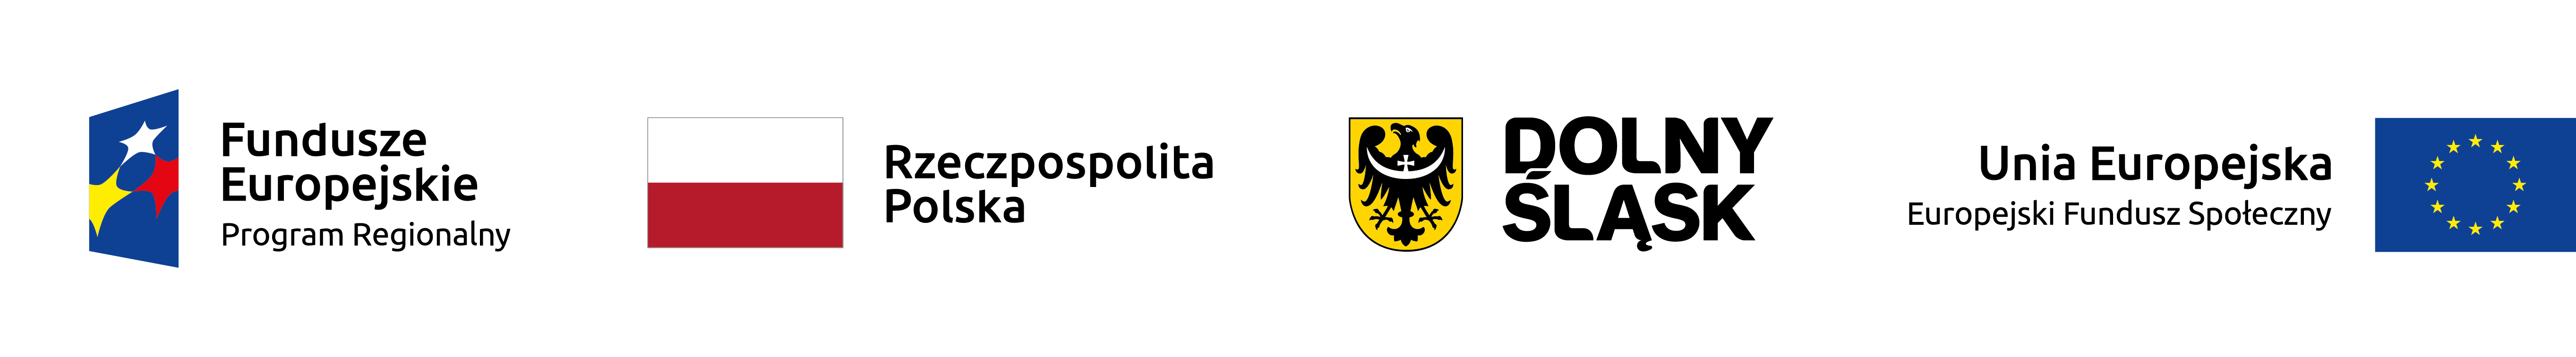 Logo programu. Zawiera znak Funduszy Europejskich, barwy RP, logo Dolnego Śląska, znak Unii Europejskiej 